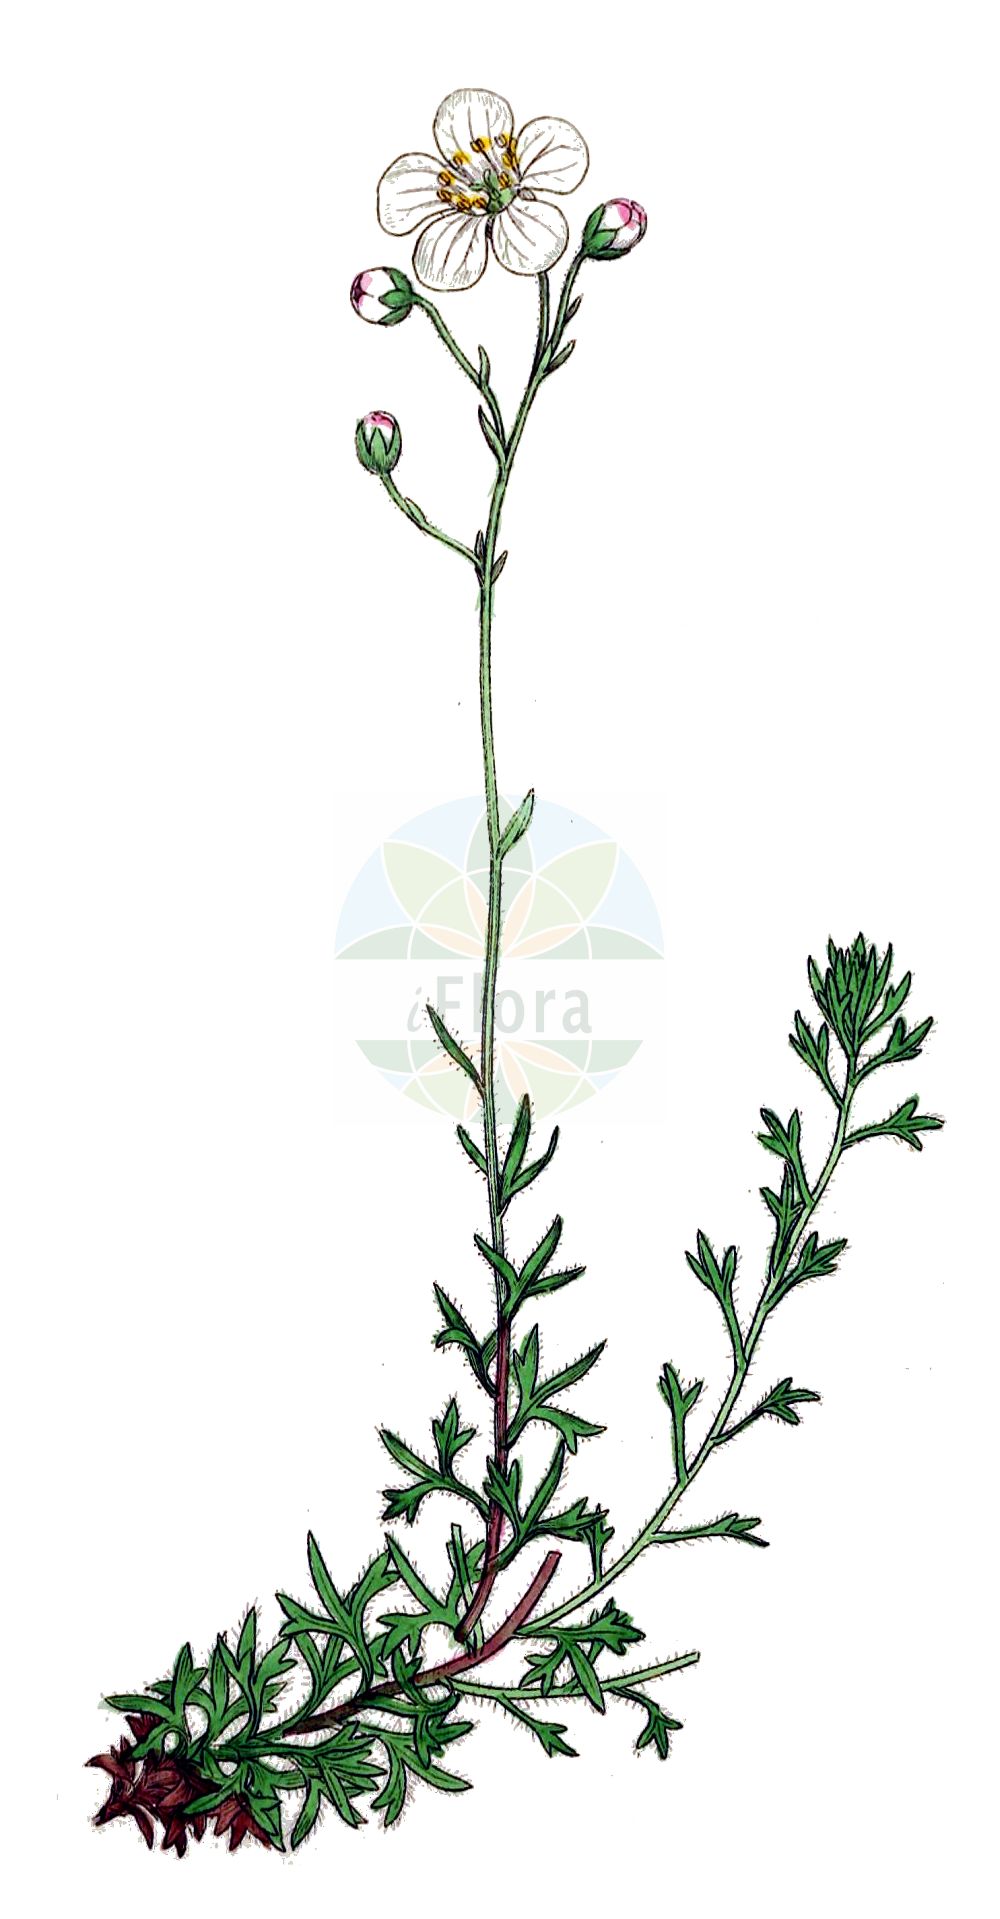 Historische Abbildung von Saxifraga hypnoides (Mossy Saxifrage). Das Bild zeigt Blatt, Bluete, Frucht und Same. ---- Historical Drawing of Saxifraga hypnoides (Mossy Saxifrage). The image is showing leaf, flower, fruit and seed.(Saxifraga hypnoides,Mossy Saxifrage,Saxifraga hypnoides,Saxifraga hypnoides L. subsp.,Saxifraga spathulata,Saxifraga,Steinbrech,Saxifrage,Saxifragaceae,Steinbrechgewächse,Saxifrage family,Blatt,Bluete,Frucht,Same,leaf,flower,fruit,seed,Sowerby (1790-1813))